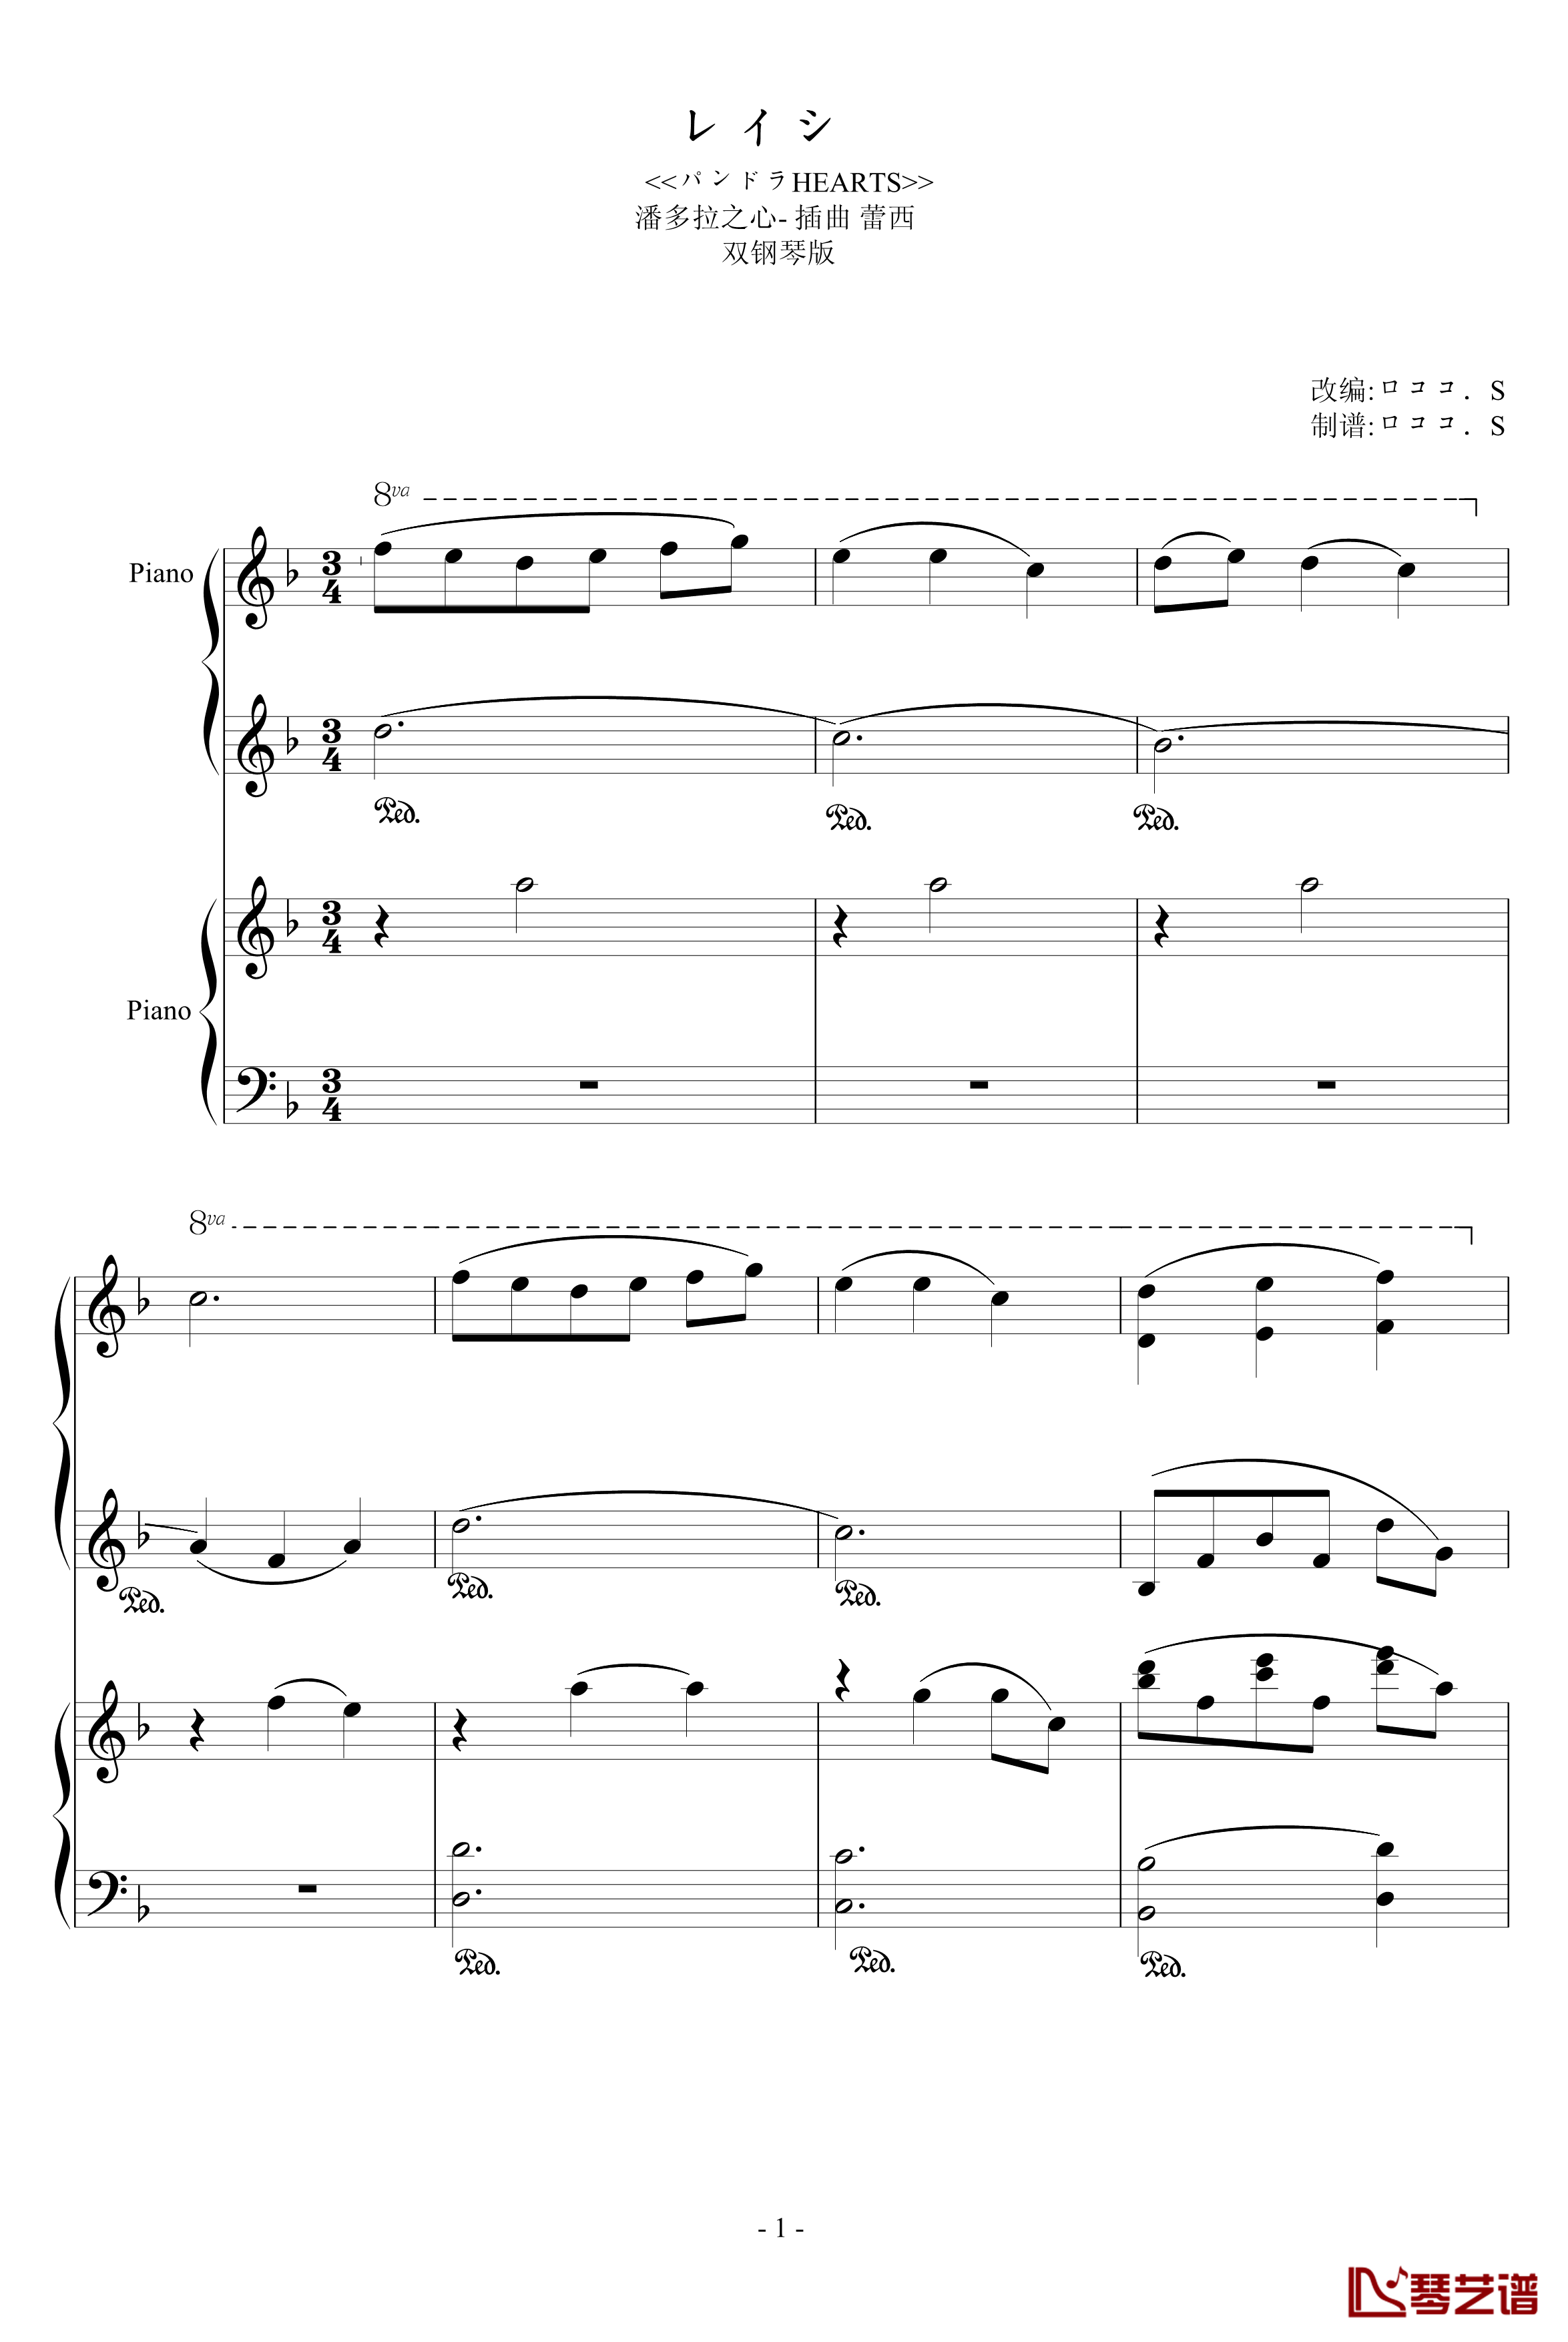 潘多拉之心插曲钢琴谱-双钢琴版-修改-影视1